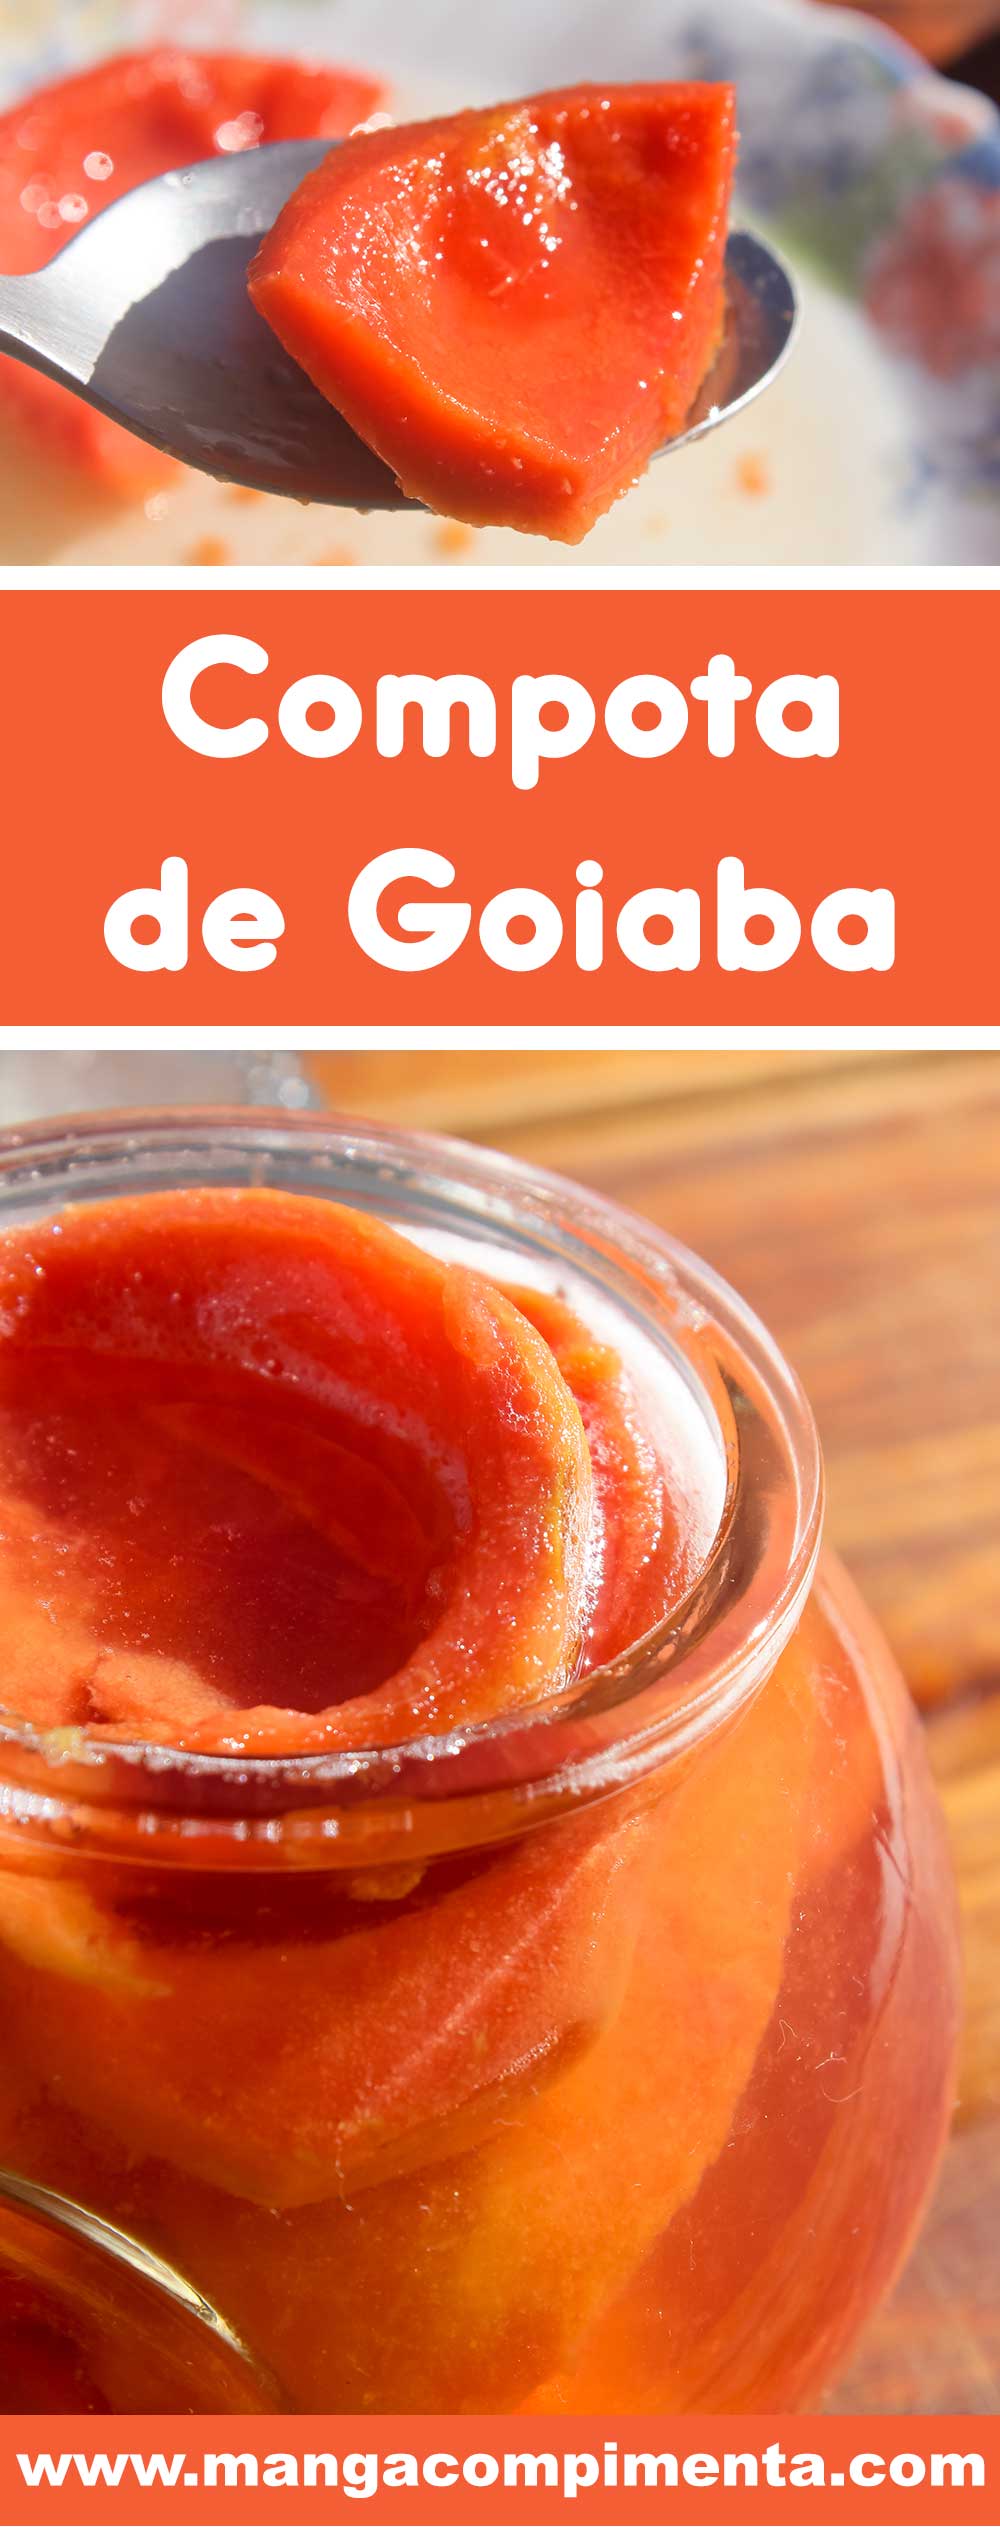 Receita de Compota de Goiaba - conserve a fruta goiaba na calda de açúcar, super fácil de preparar! 